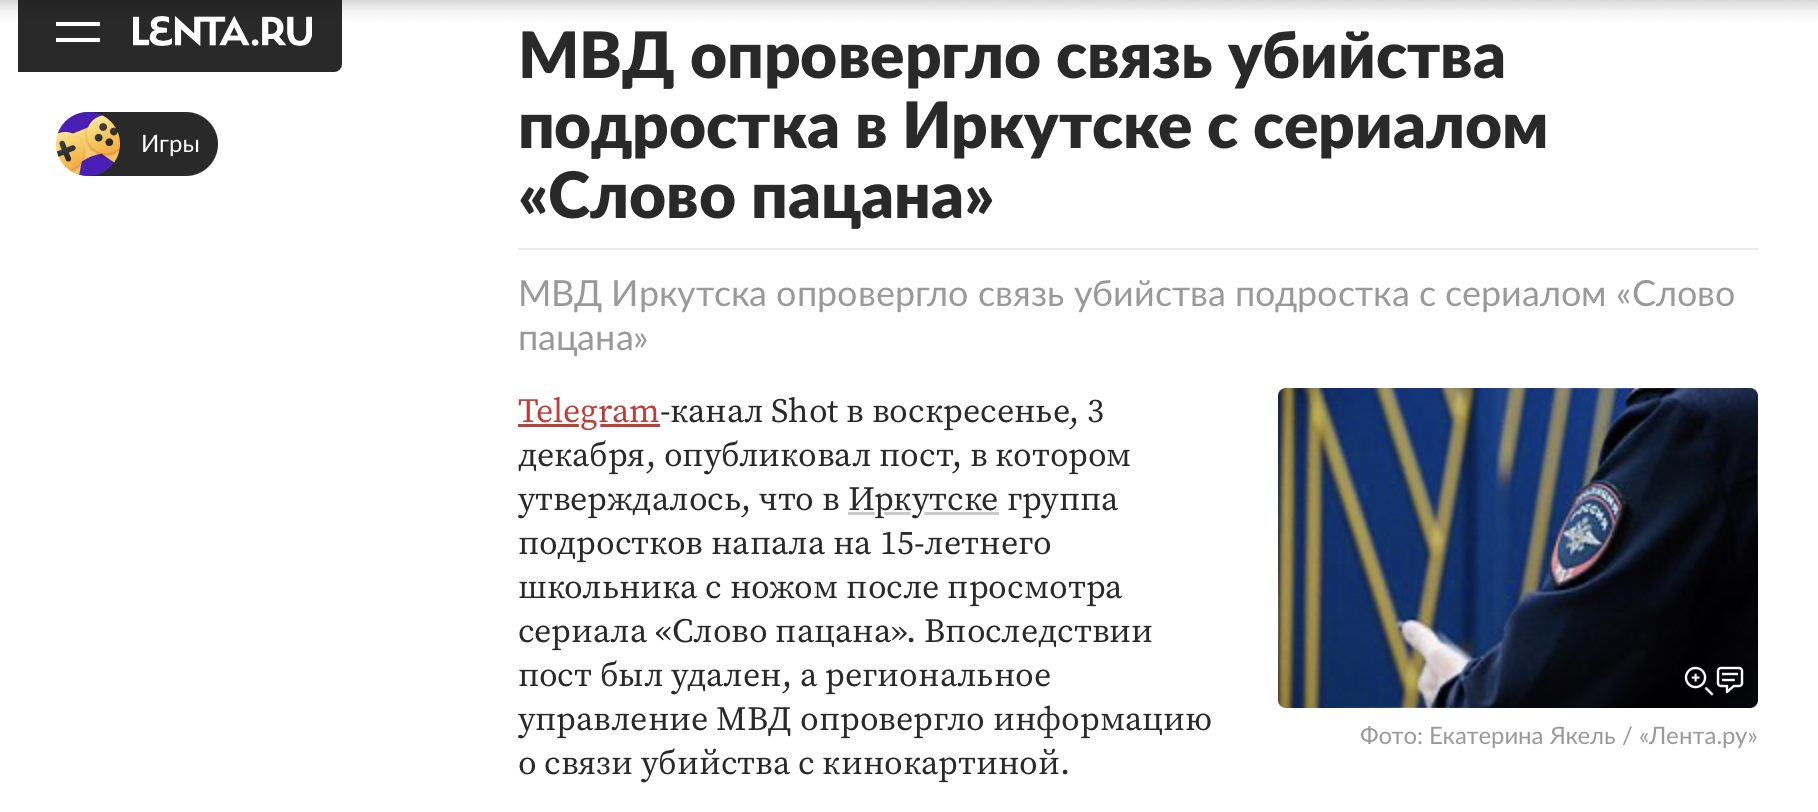 МВД опровергло связь убийства подростка в Иркутске с сериалом Слово пацана